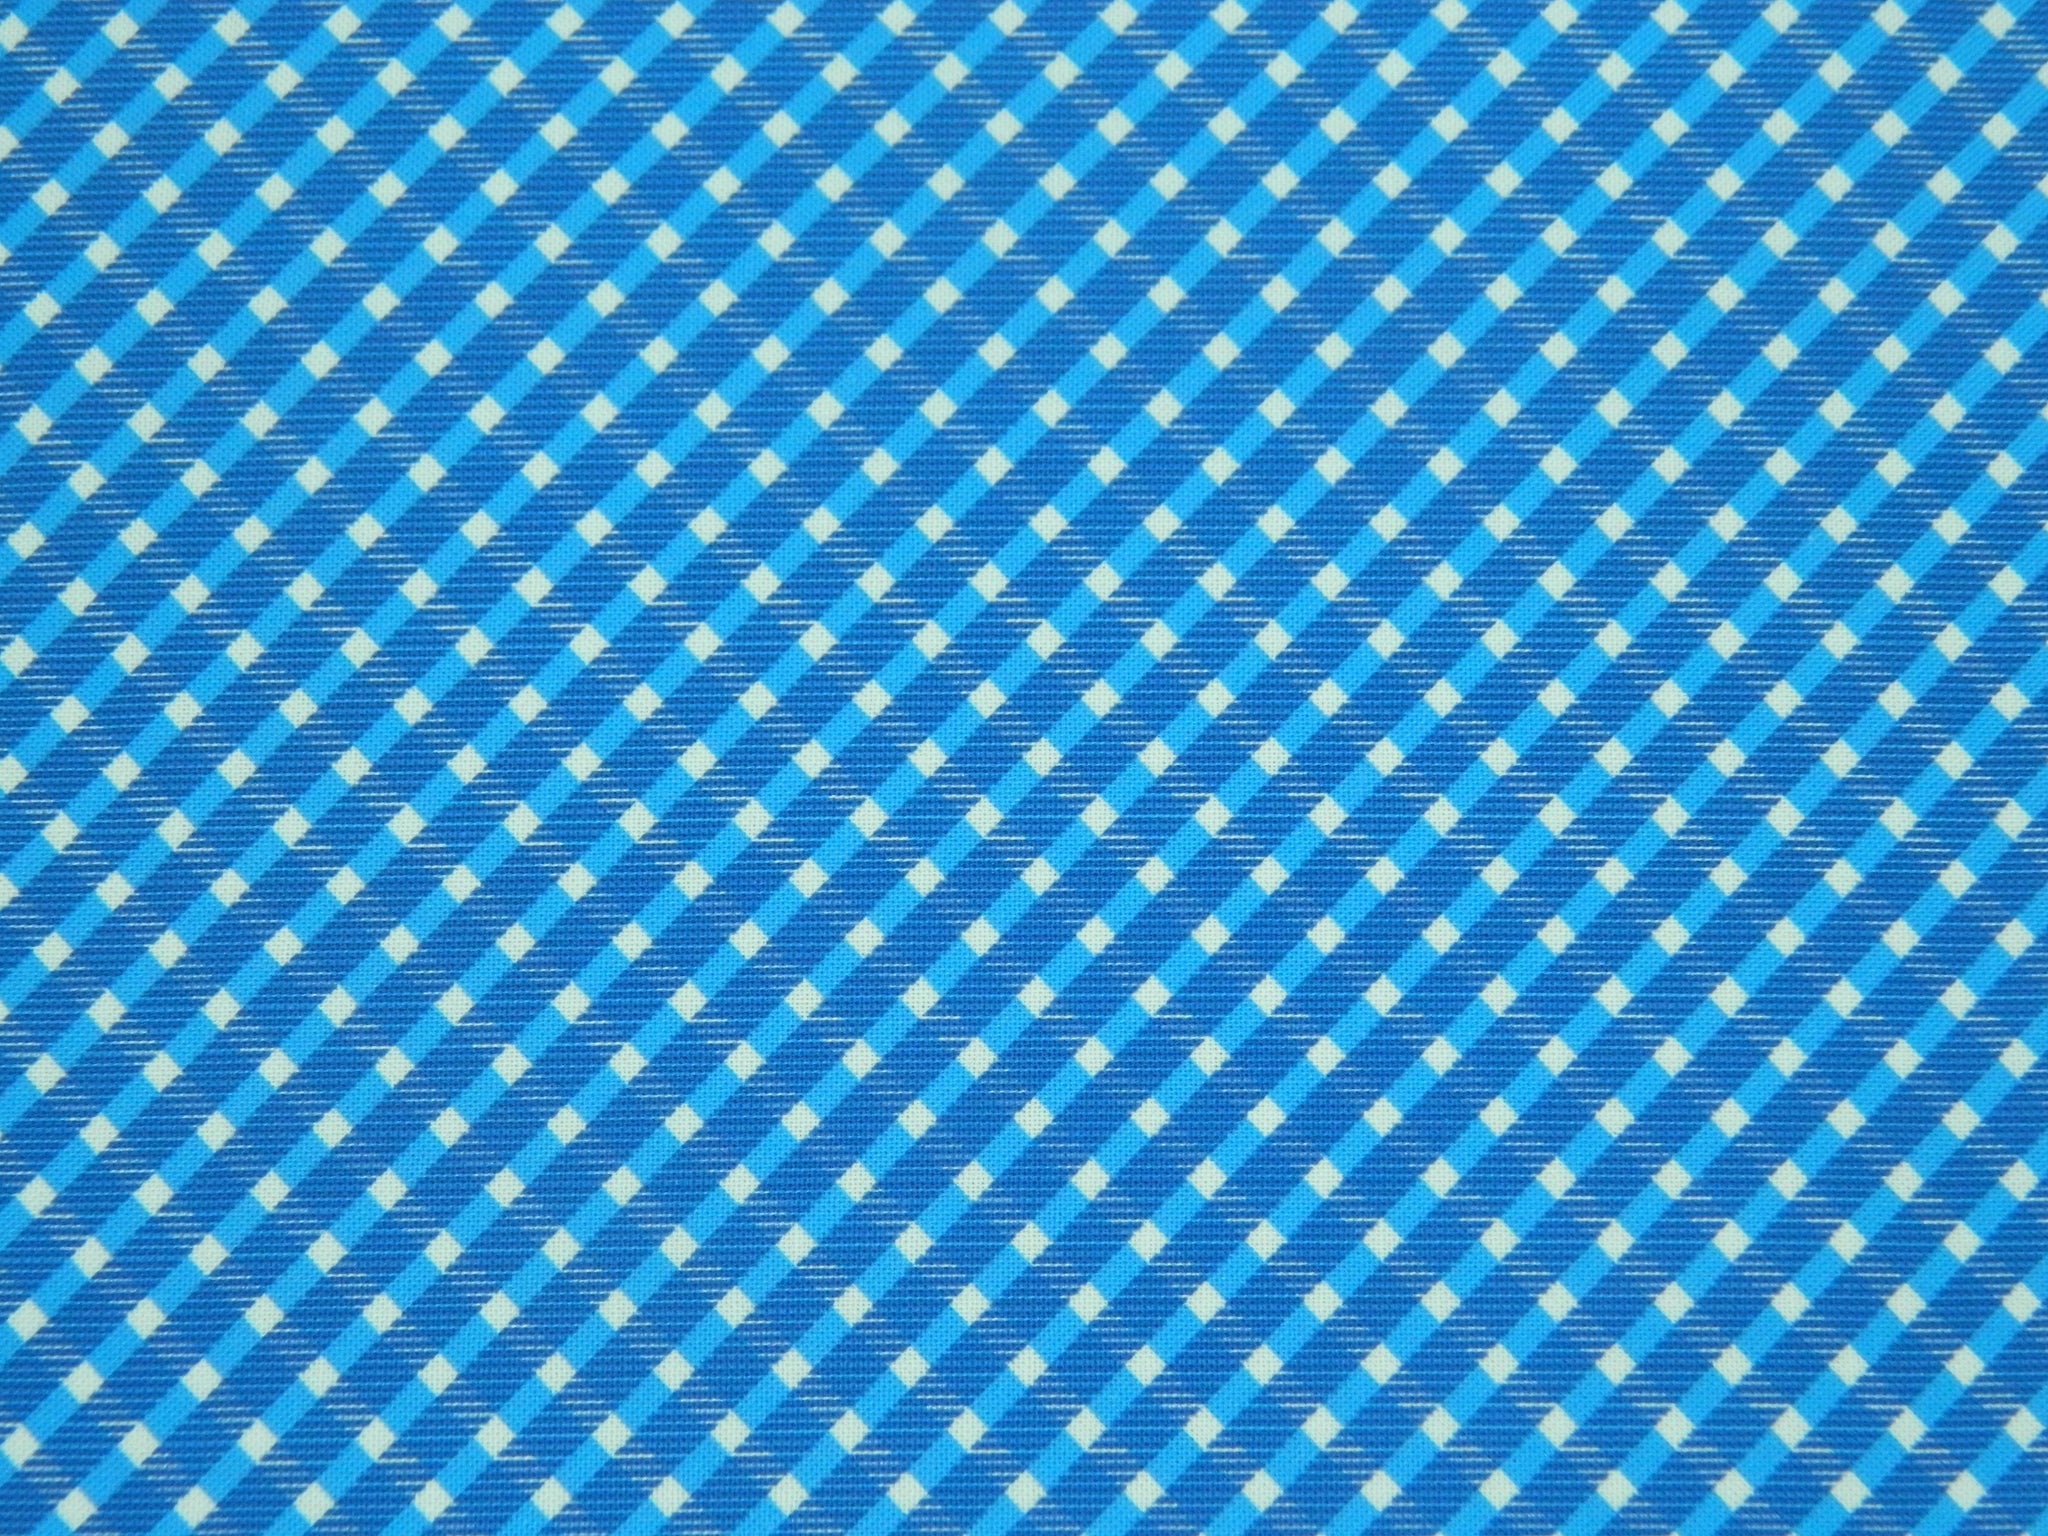 Spots & Dots Blue & White Julia M11927-11